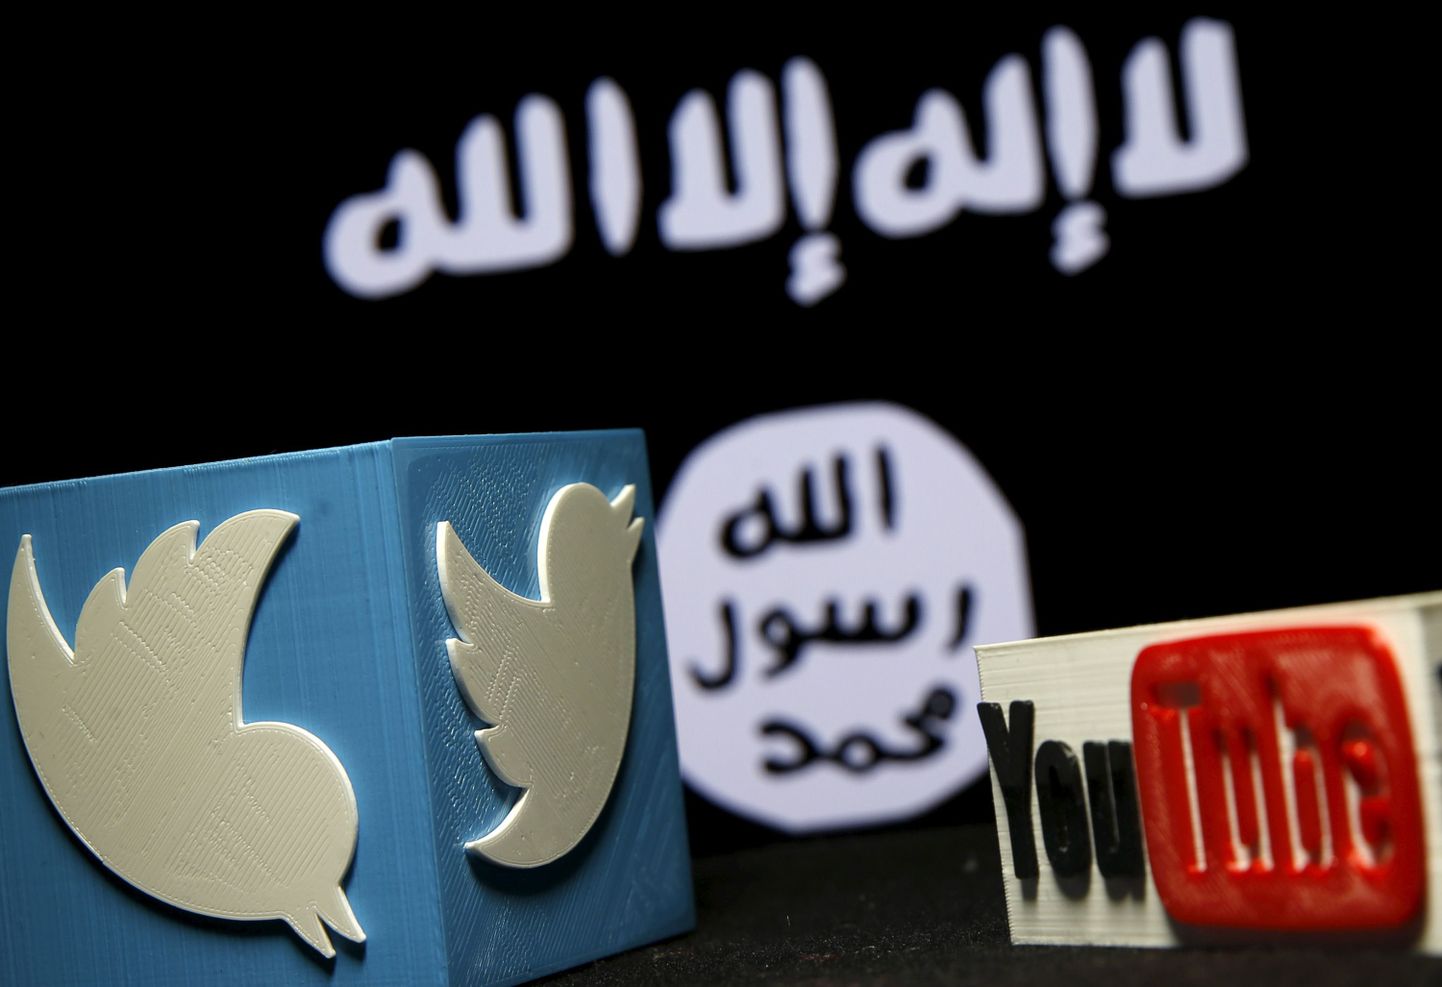 Islamiriigi, Twitteri ja YouTube`i logod.